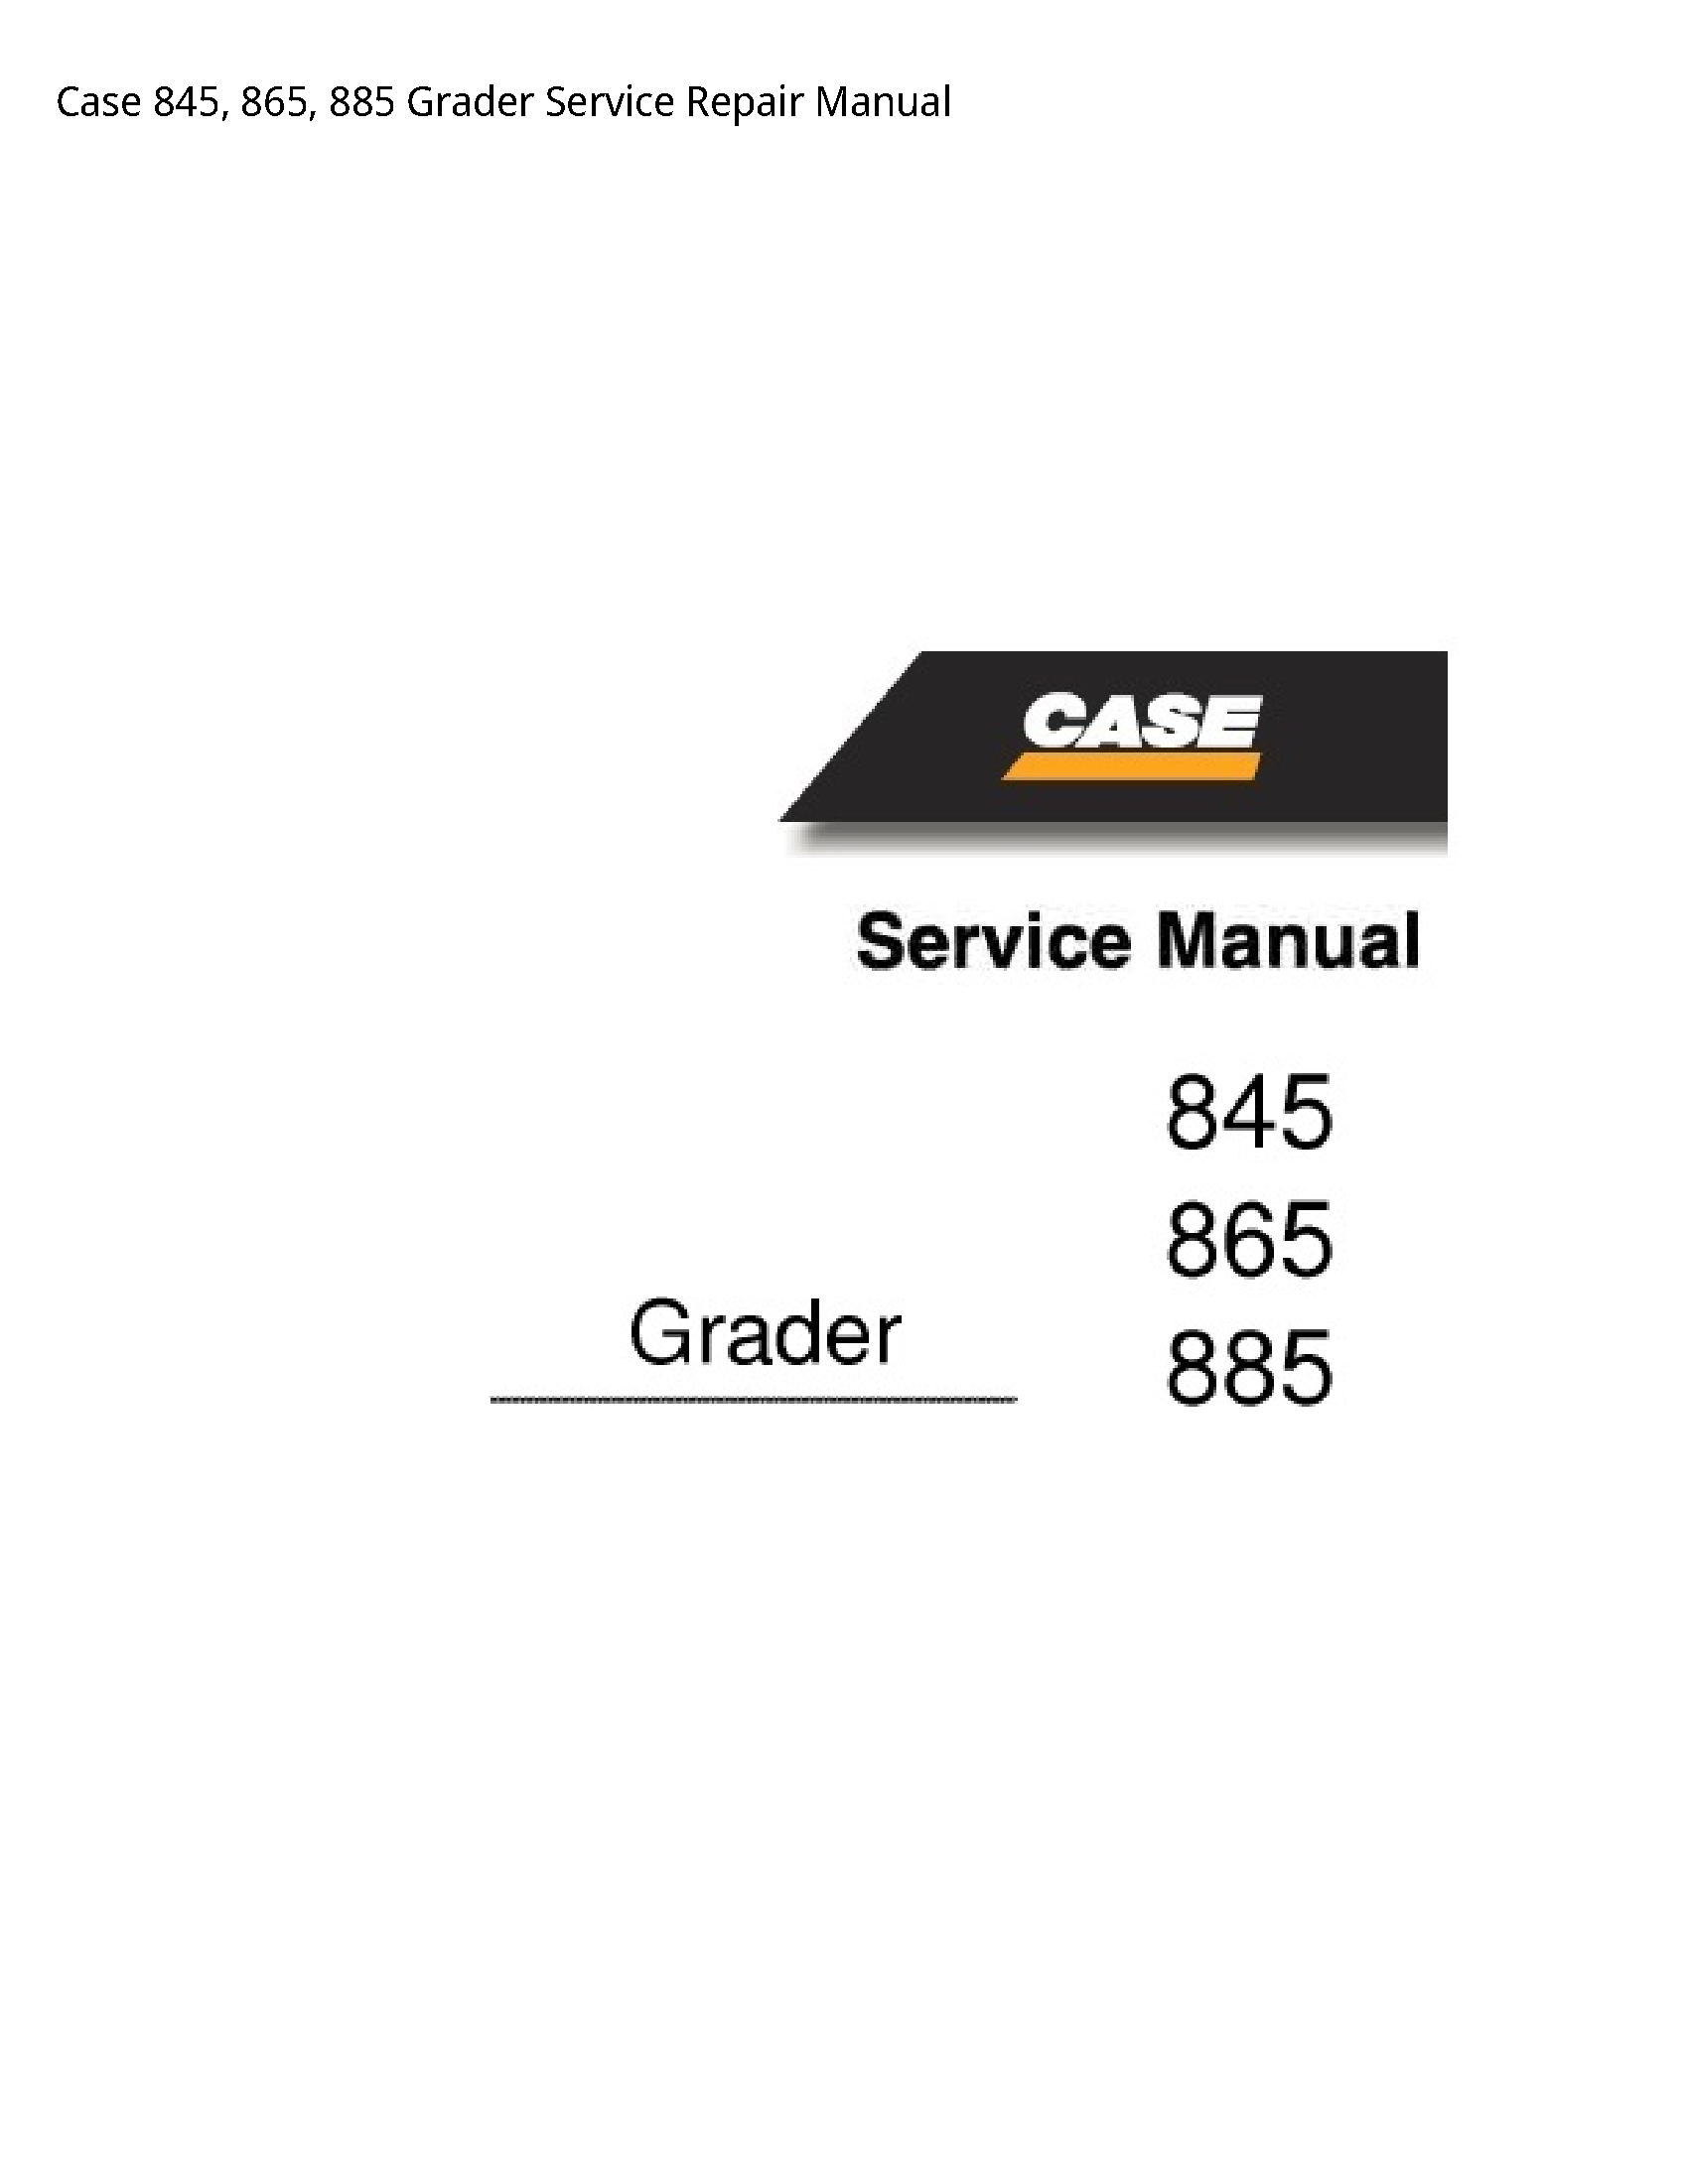 Case/Case IH 845 Grader manual